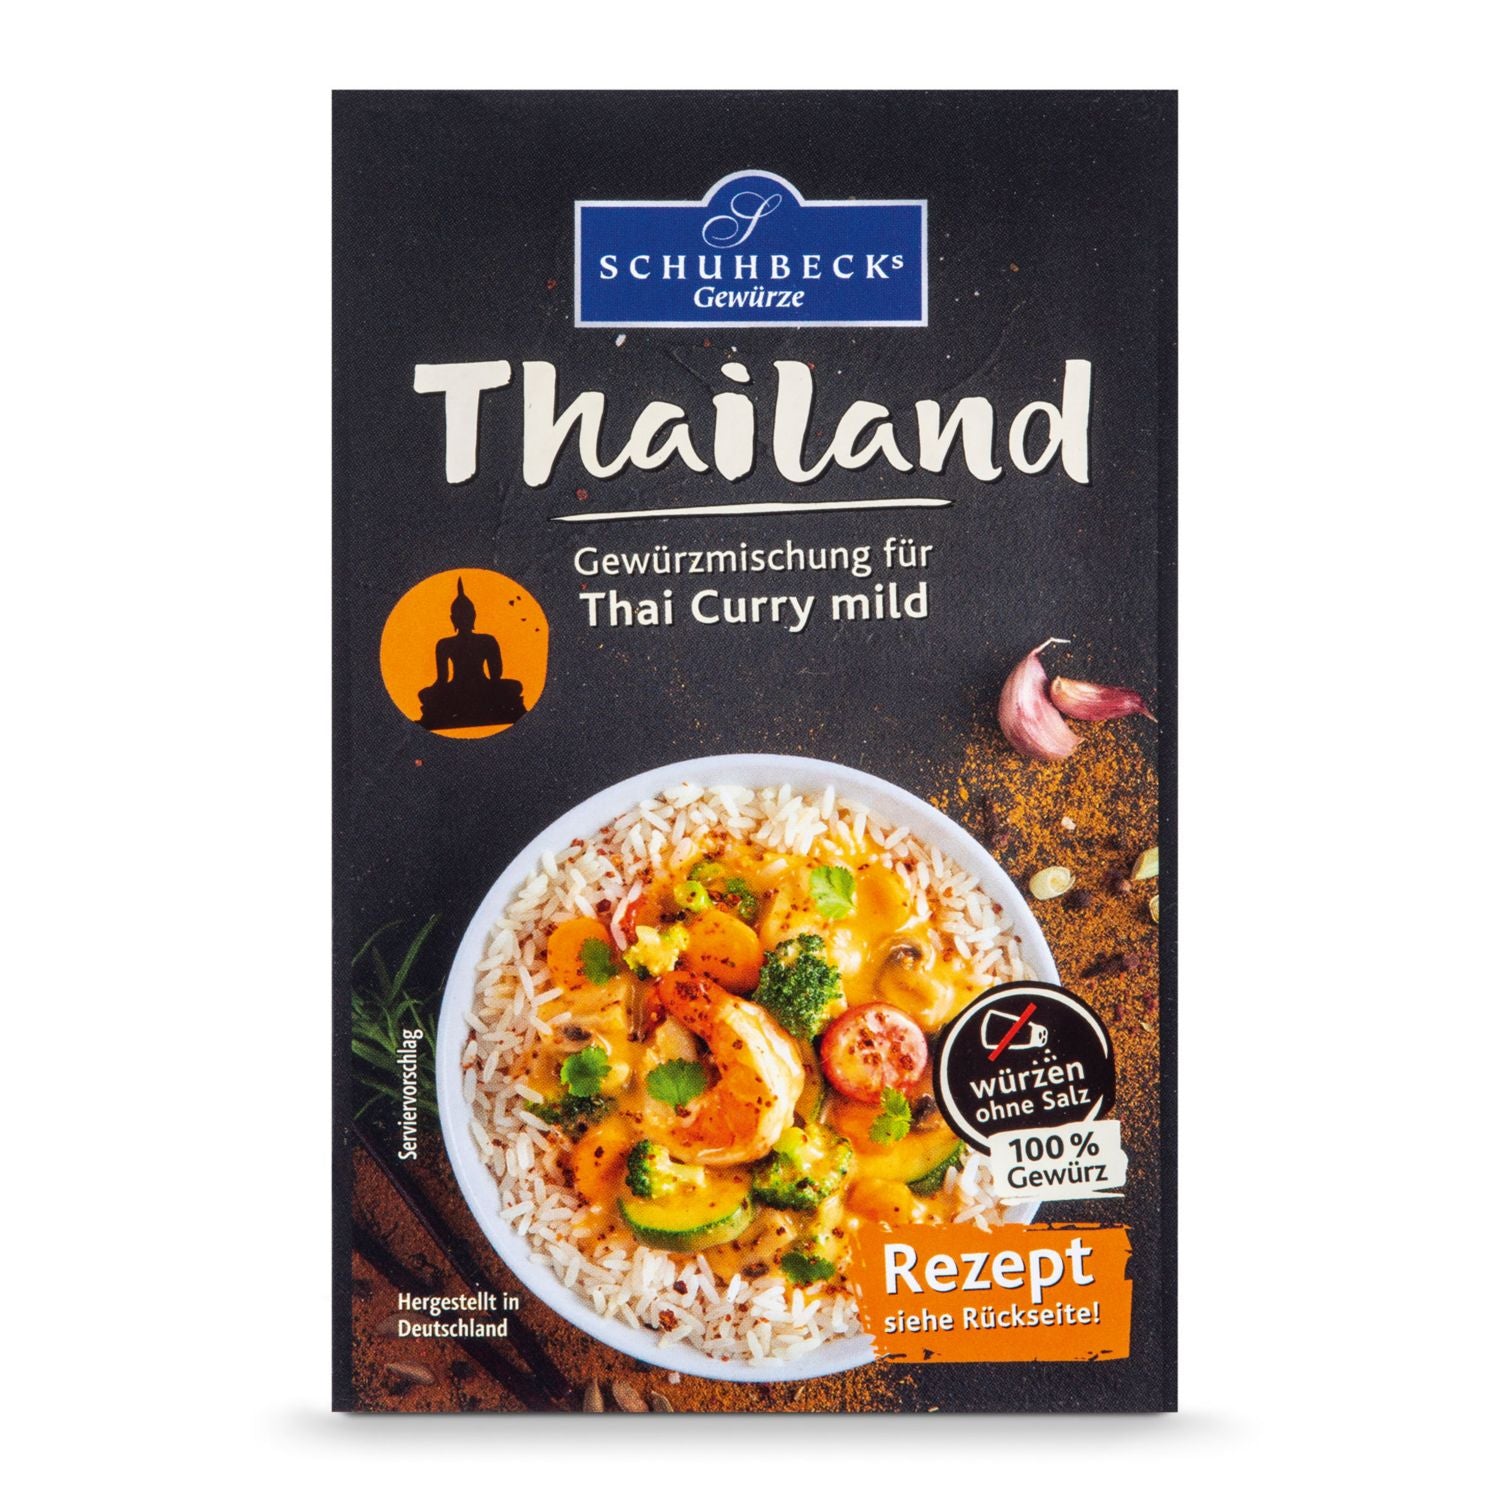 Thailand Gewürzmischung für Thai Curry mild - für 4 Portionen